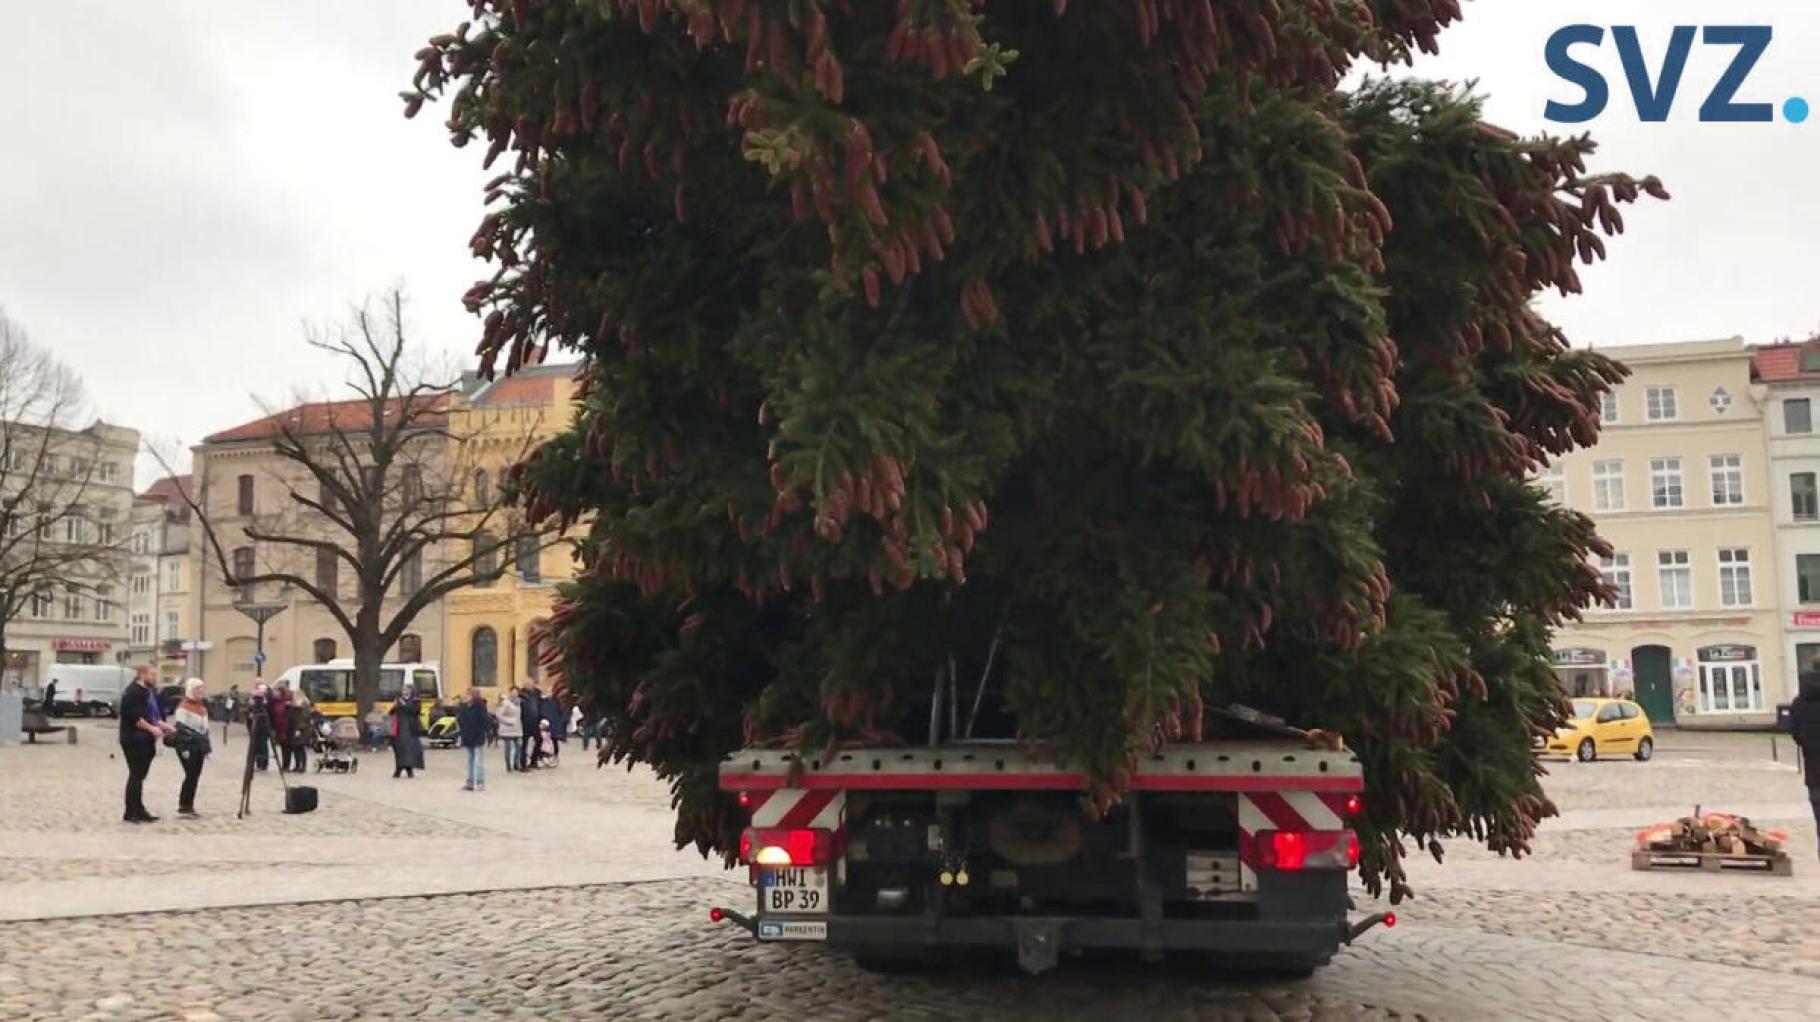 Wismars Weihnachtsbaum 2022 steht